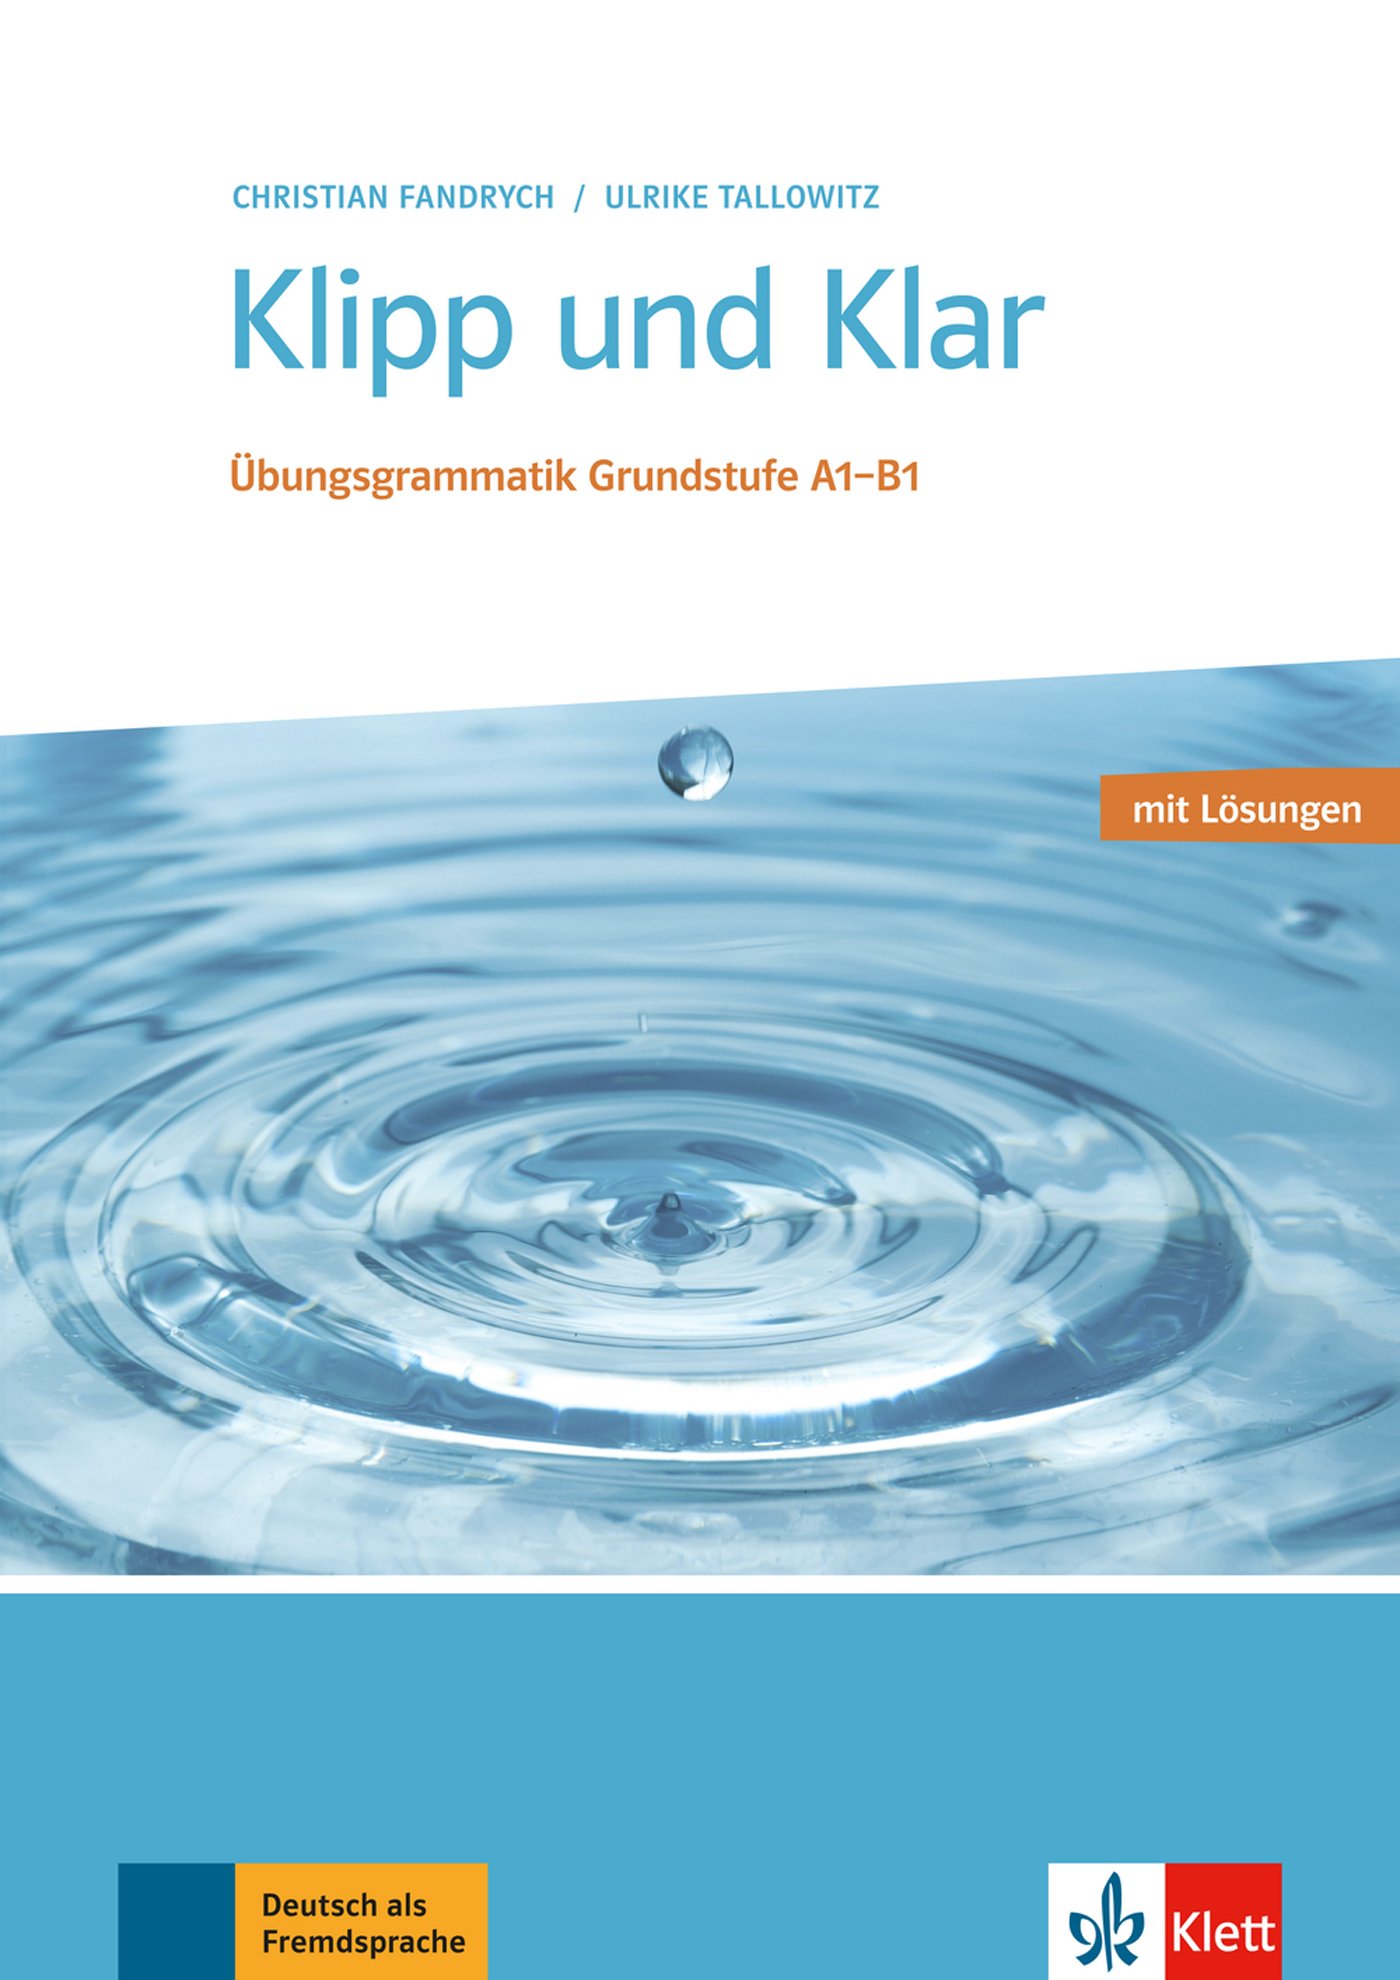 KLIPP UND KLAR Übungsgrammatik Grundstufe Deutsch mit Lösungen